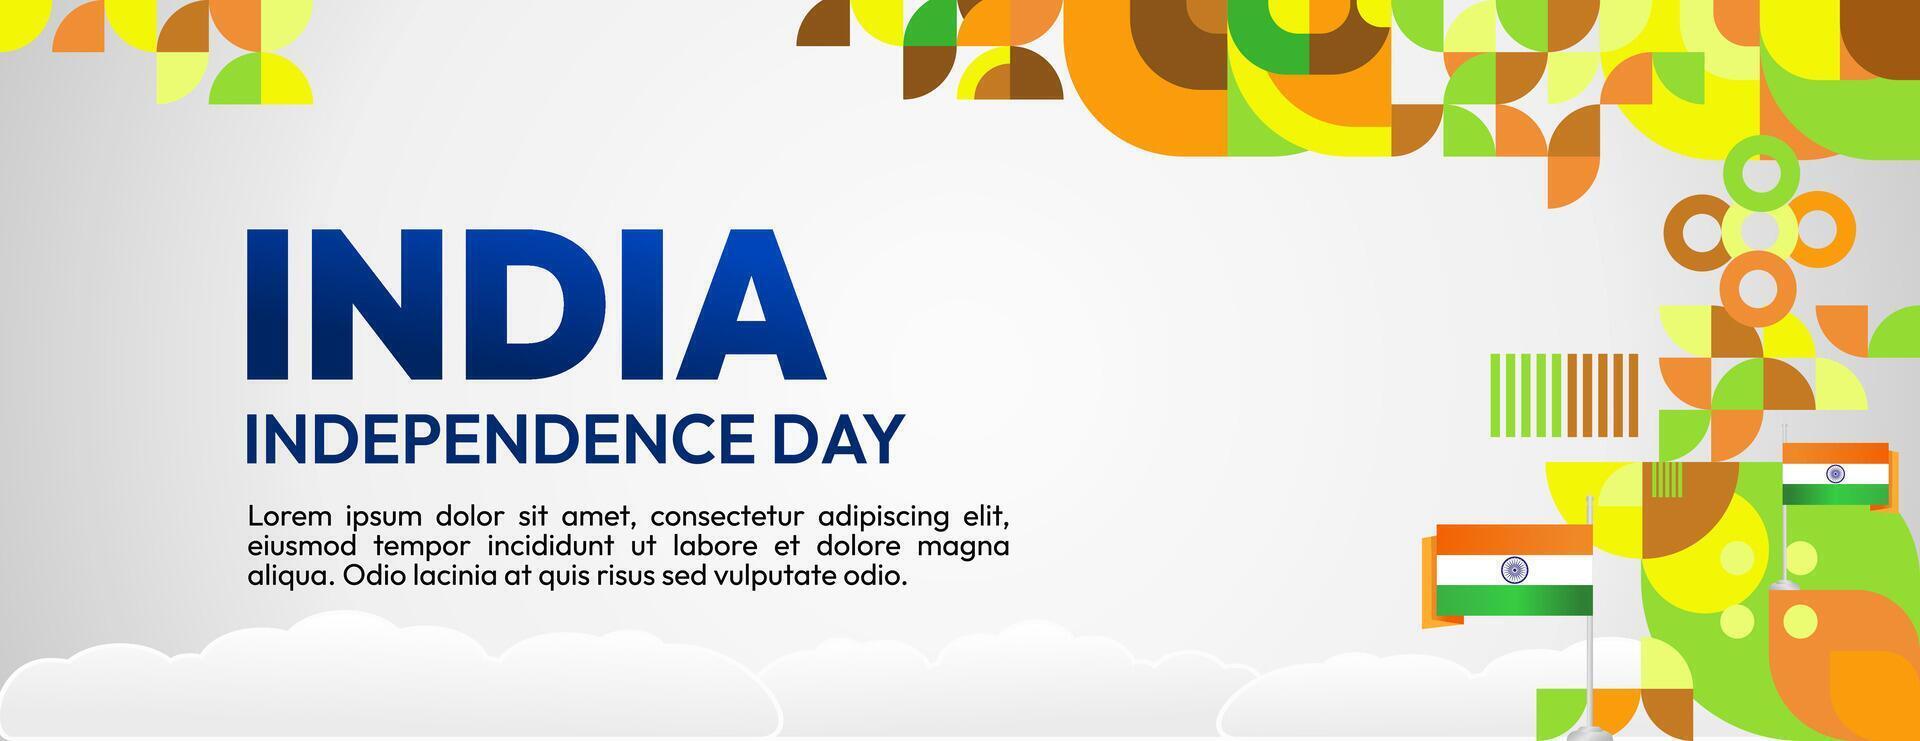 Indien indépendance journée bannière dans coloré moderne géométrique style. content nationale indépendance journée salutation carte couverture avec typographie. vecteur illustration pour nationale vacances fête fête